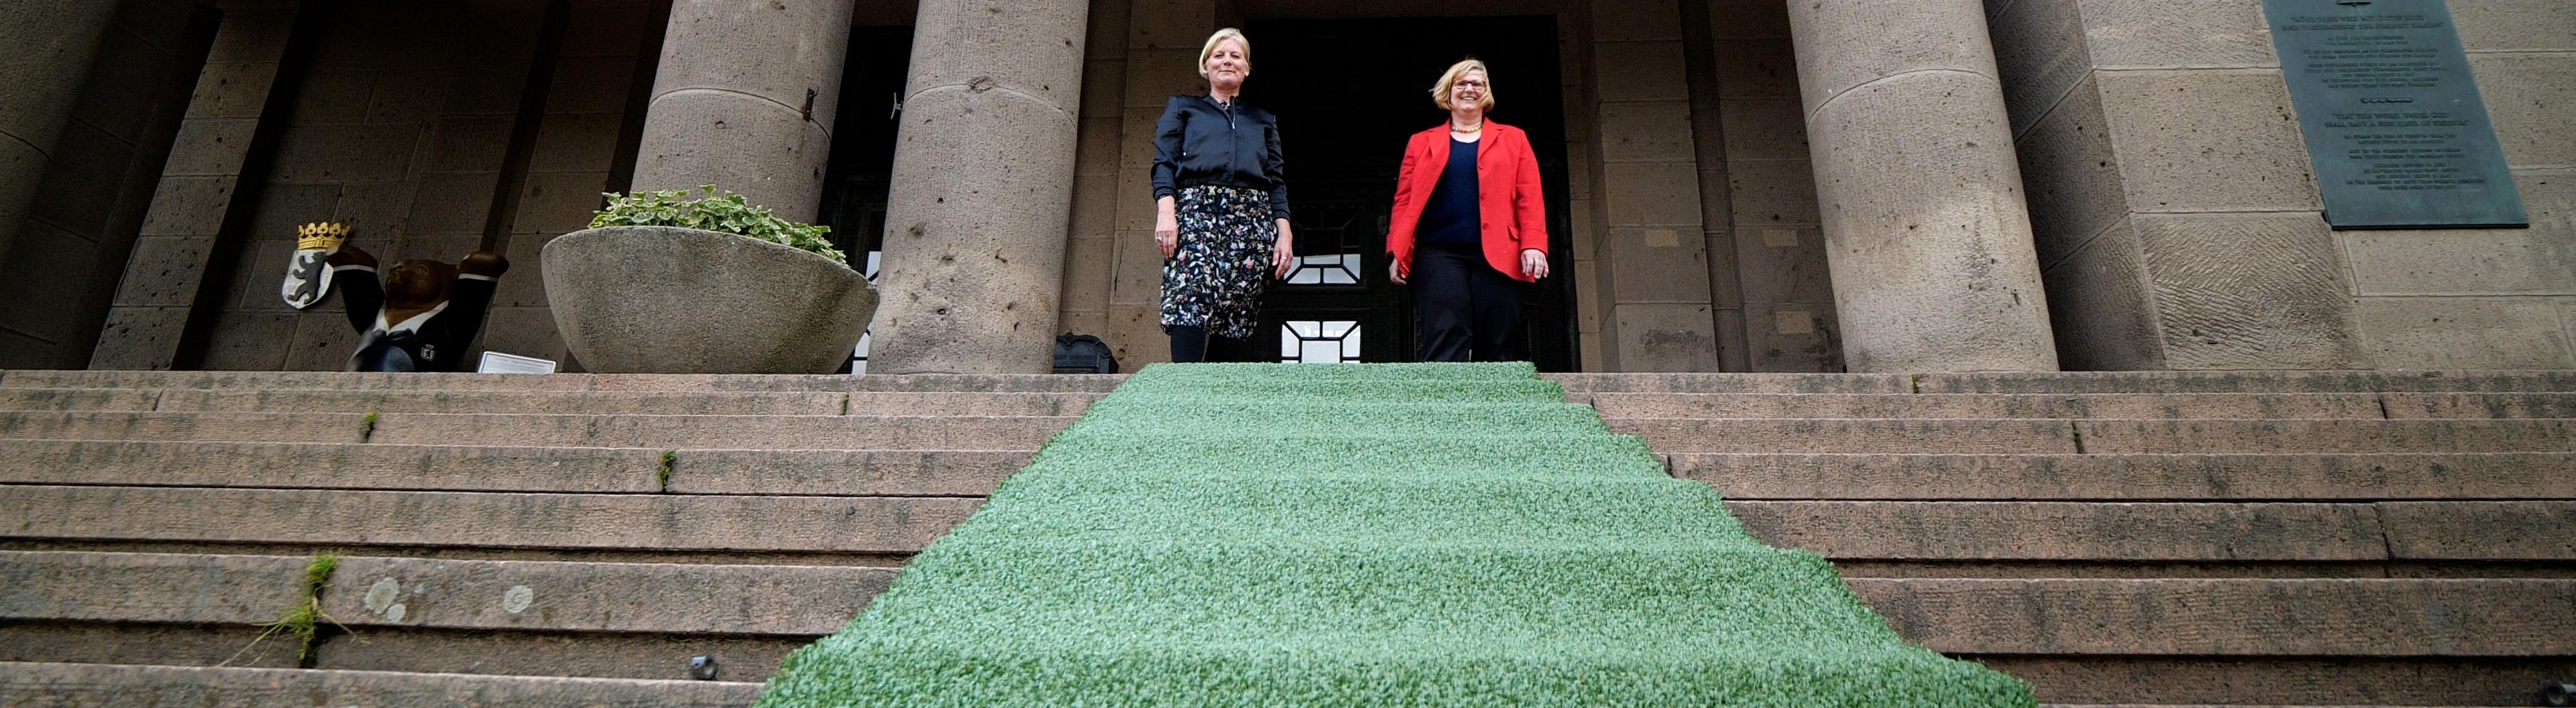 Frau Schöttler und Frau Martina Marijnissen sollen den grünen Teppich vor dem Rathaus aus.